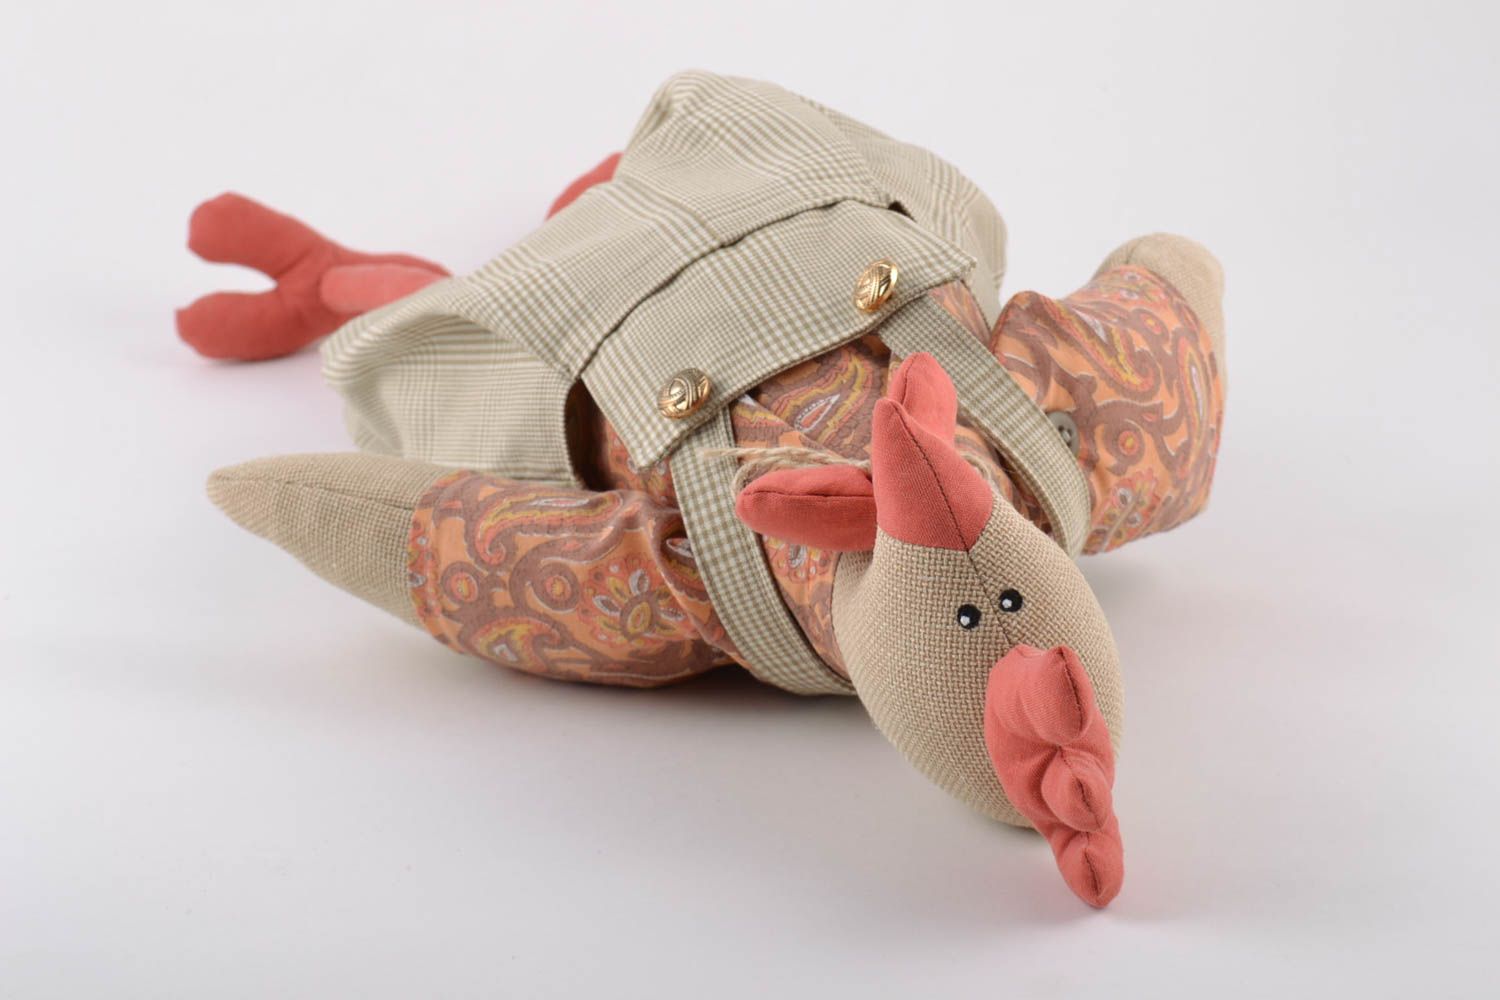 Текстильная игрушка в виде петуха ручной работы из льна оригинальная для ребенка фото 4